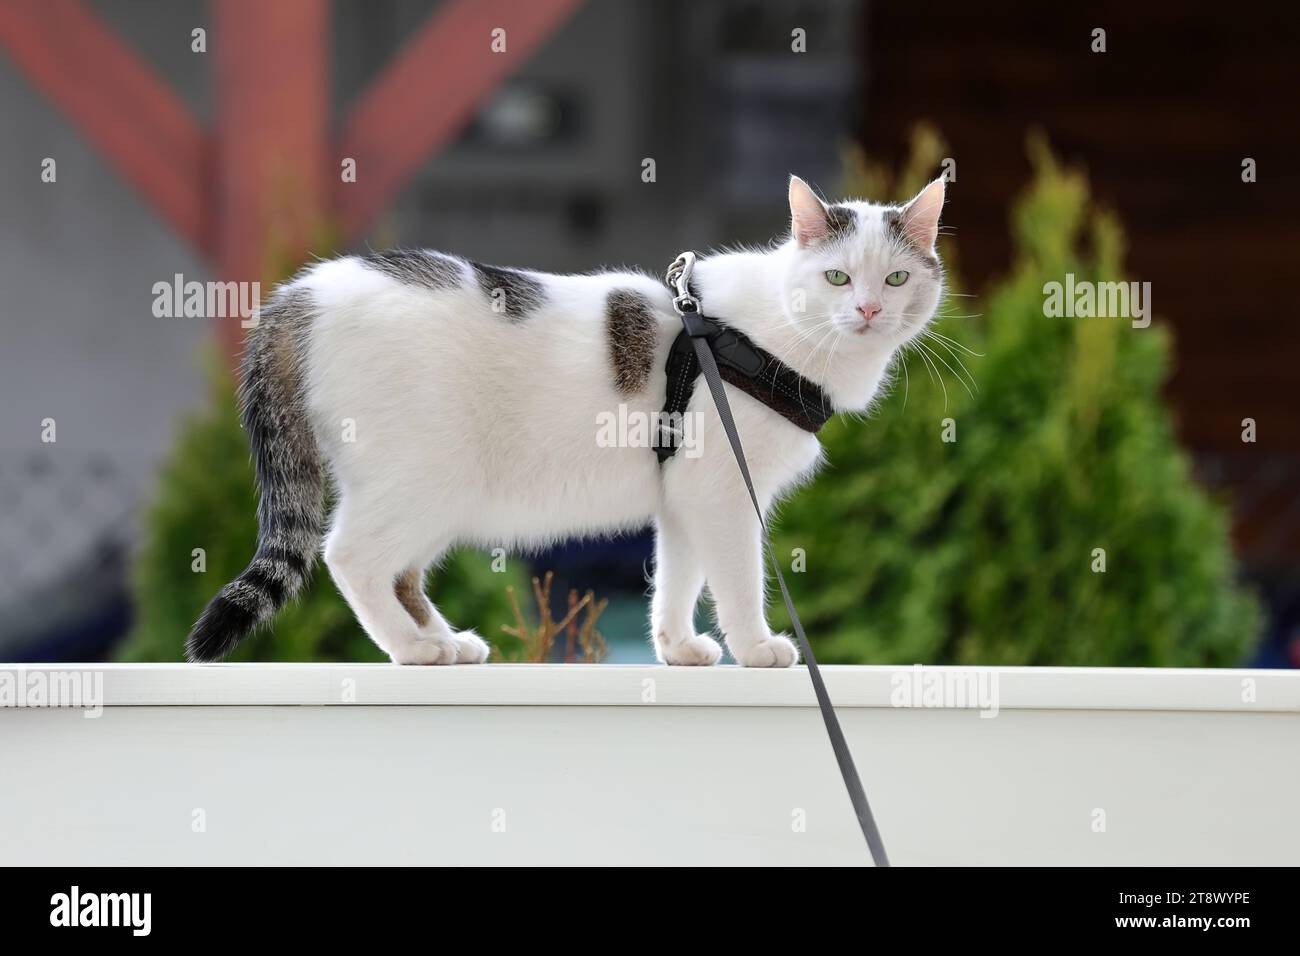 Mignon chat blanc en laisse marche sur la balustrade du porche. Banque D'Images